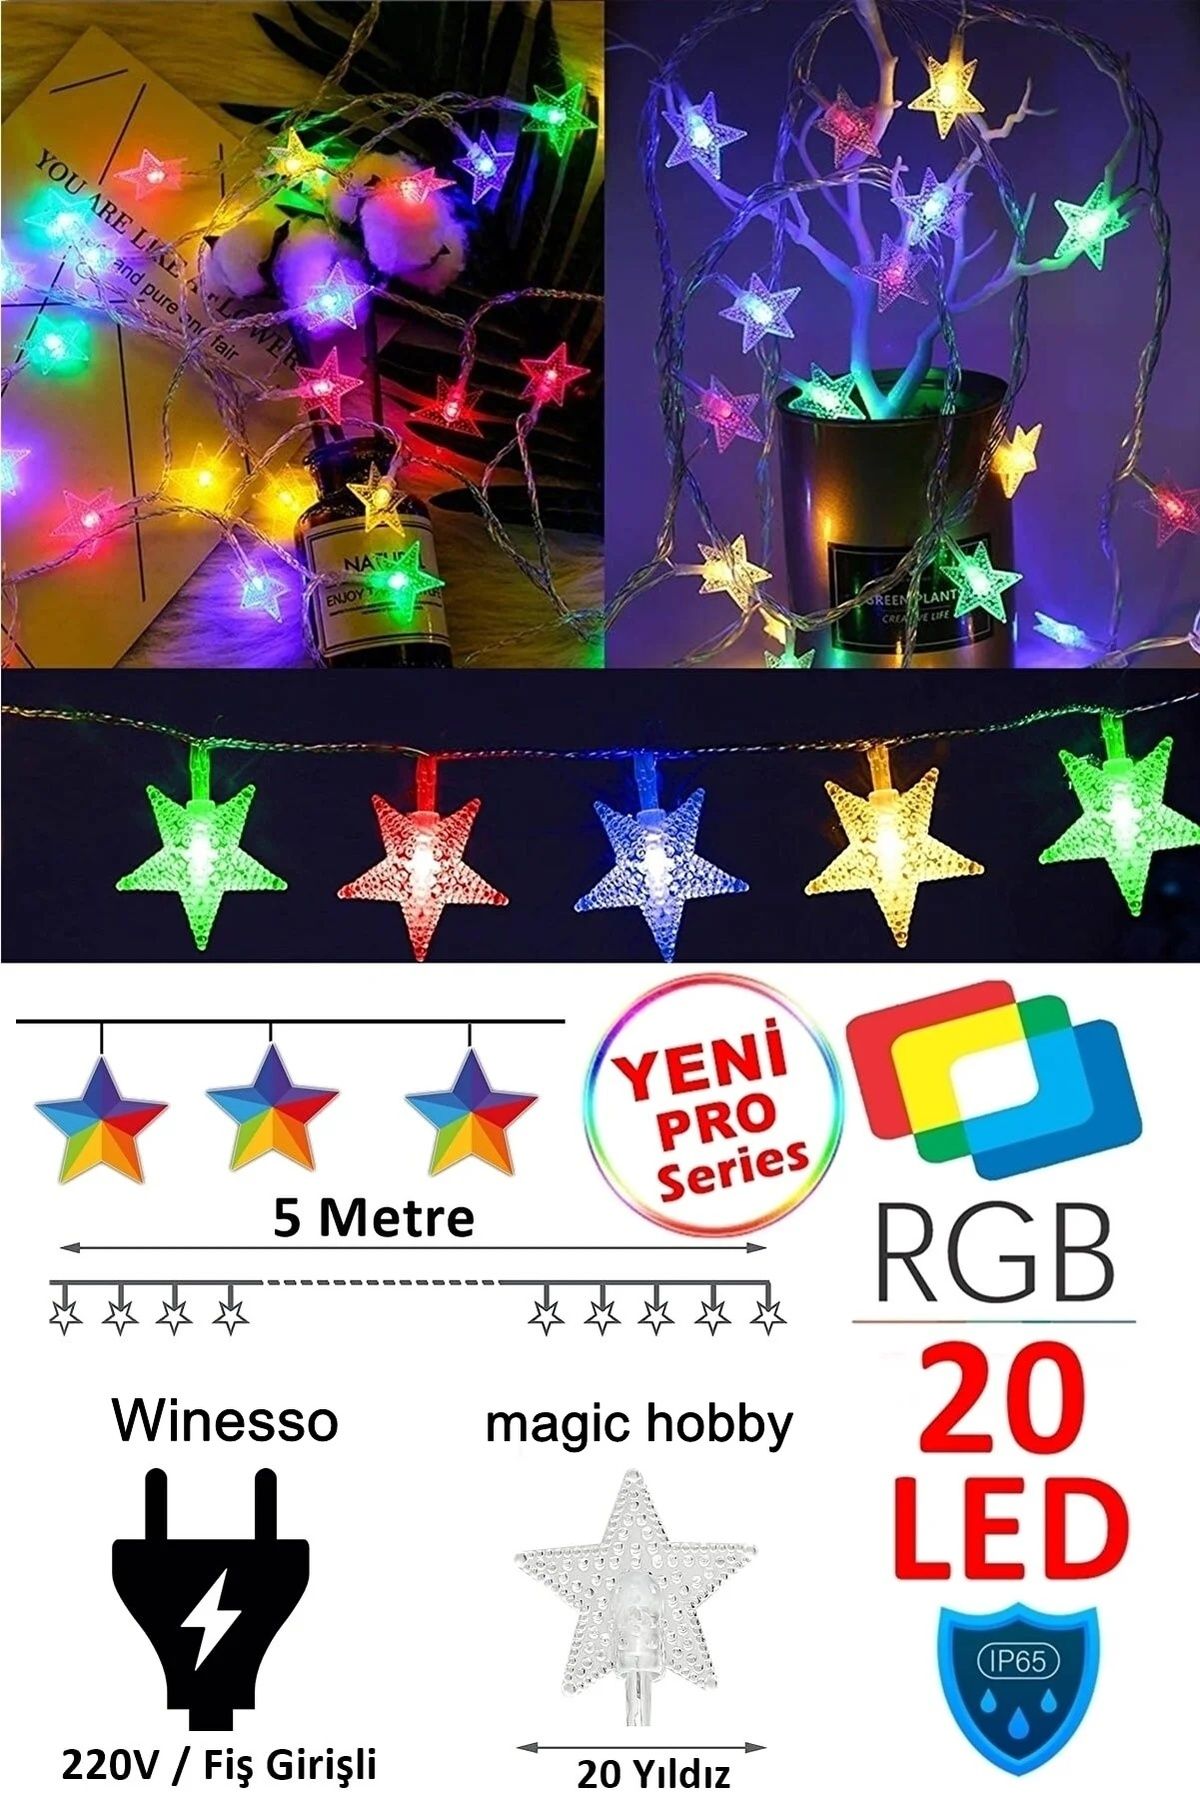 Magic Hobby Fişli Rgb Yıldız Led 5 Mt 20 Led Dekoratif Yıldızlı Yılbaşı Cam Ağacı Yılbaşı Süs Led